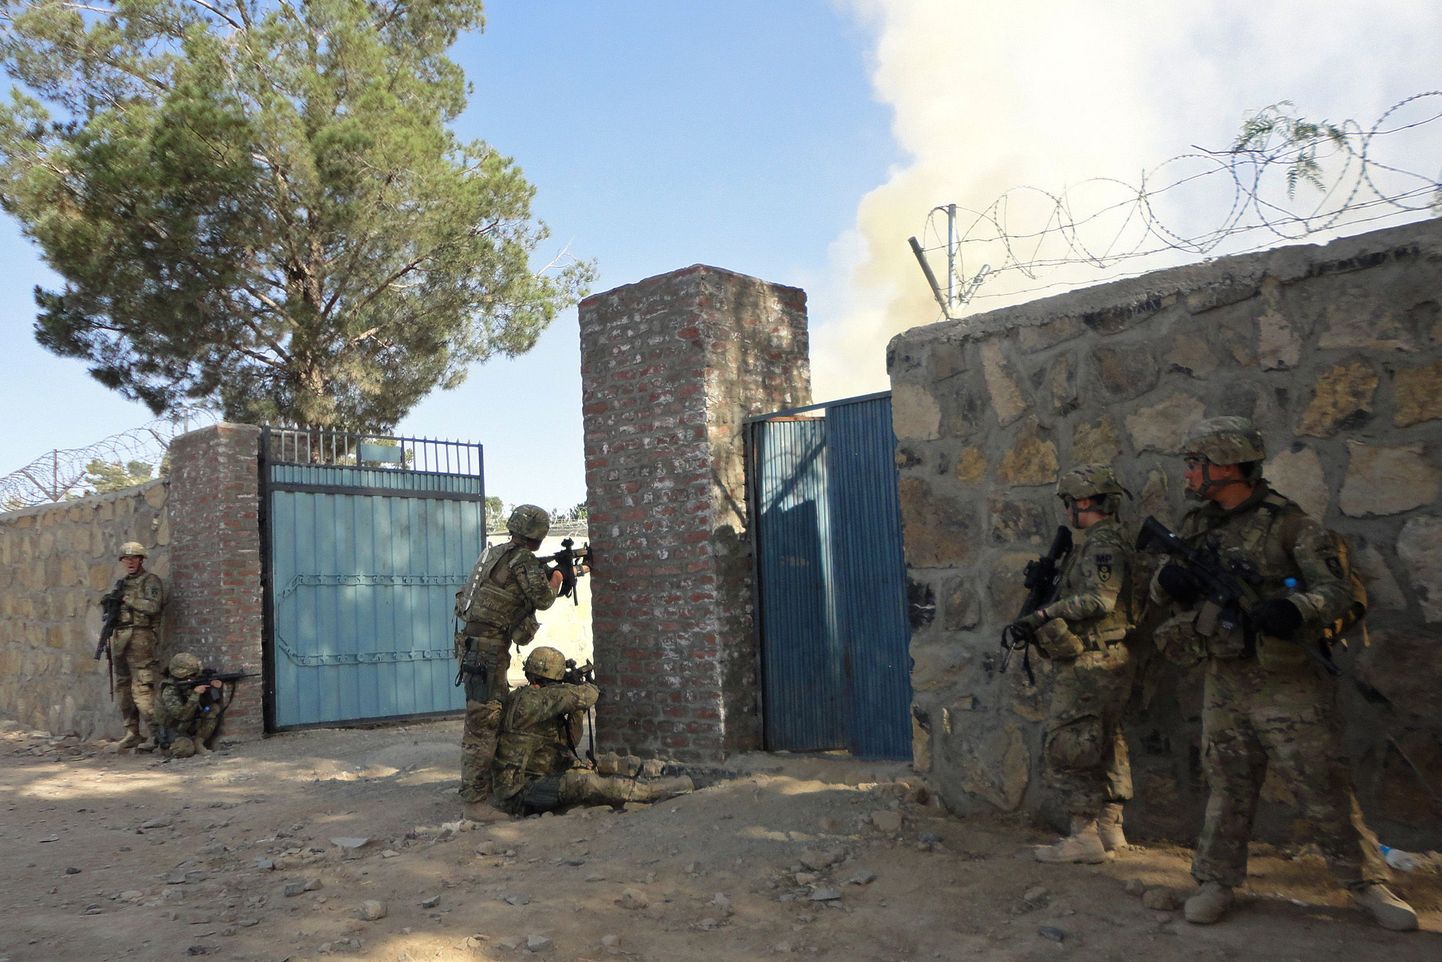 USA sõjaväelased täna Khosti provintsis varitsemas kohalikku politsei peakorterit.